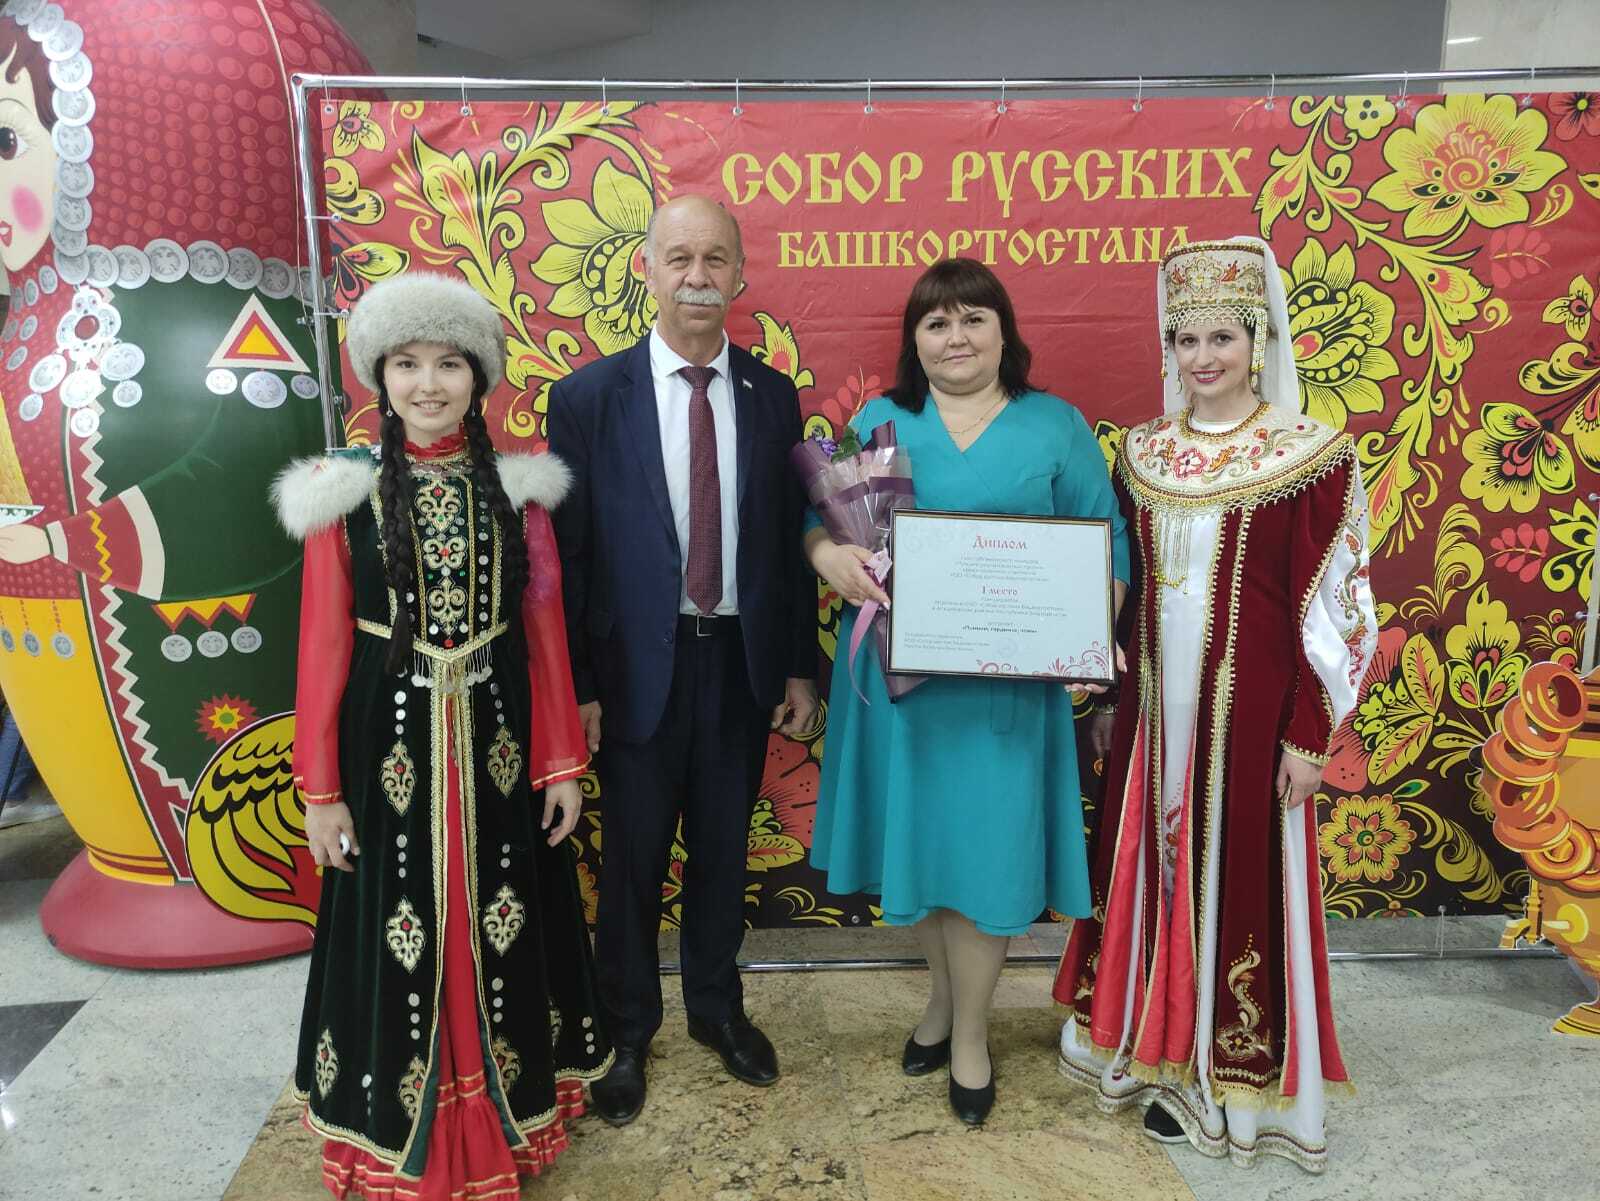 В Уфе состоялась конференция, посвященная 25-летию Собора русских Башкортостана